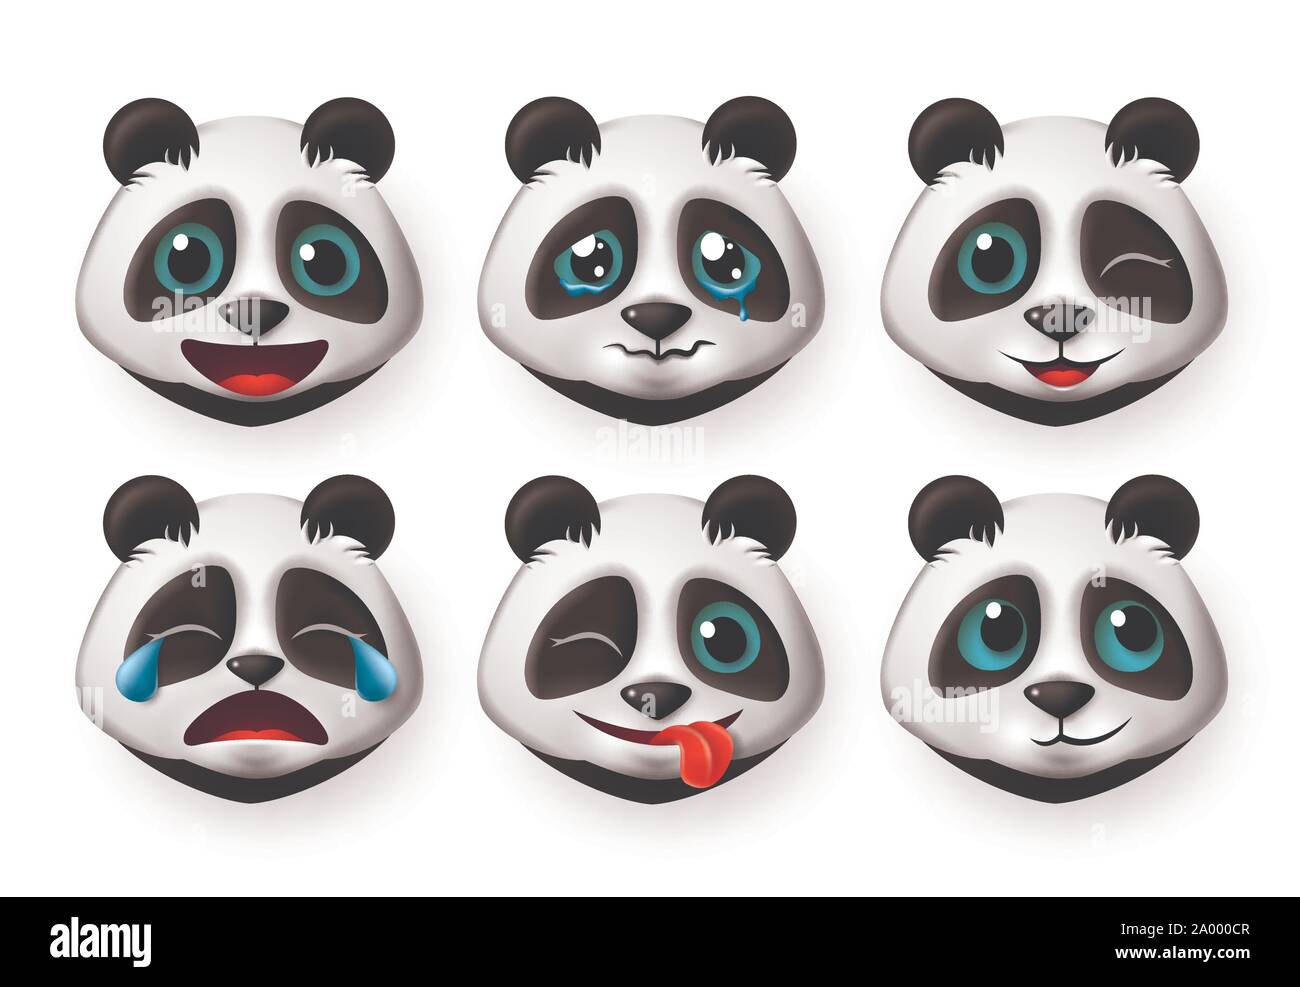 Gli Emoji orso panda vector set. Carino gigantesco orso panda emoticon e icona con espressione facciale di felice e pianto isolato in uno sfondo bianco. Illustrazione Vettoriale